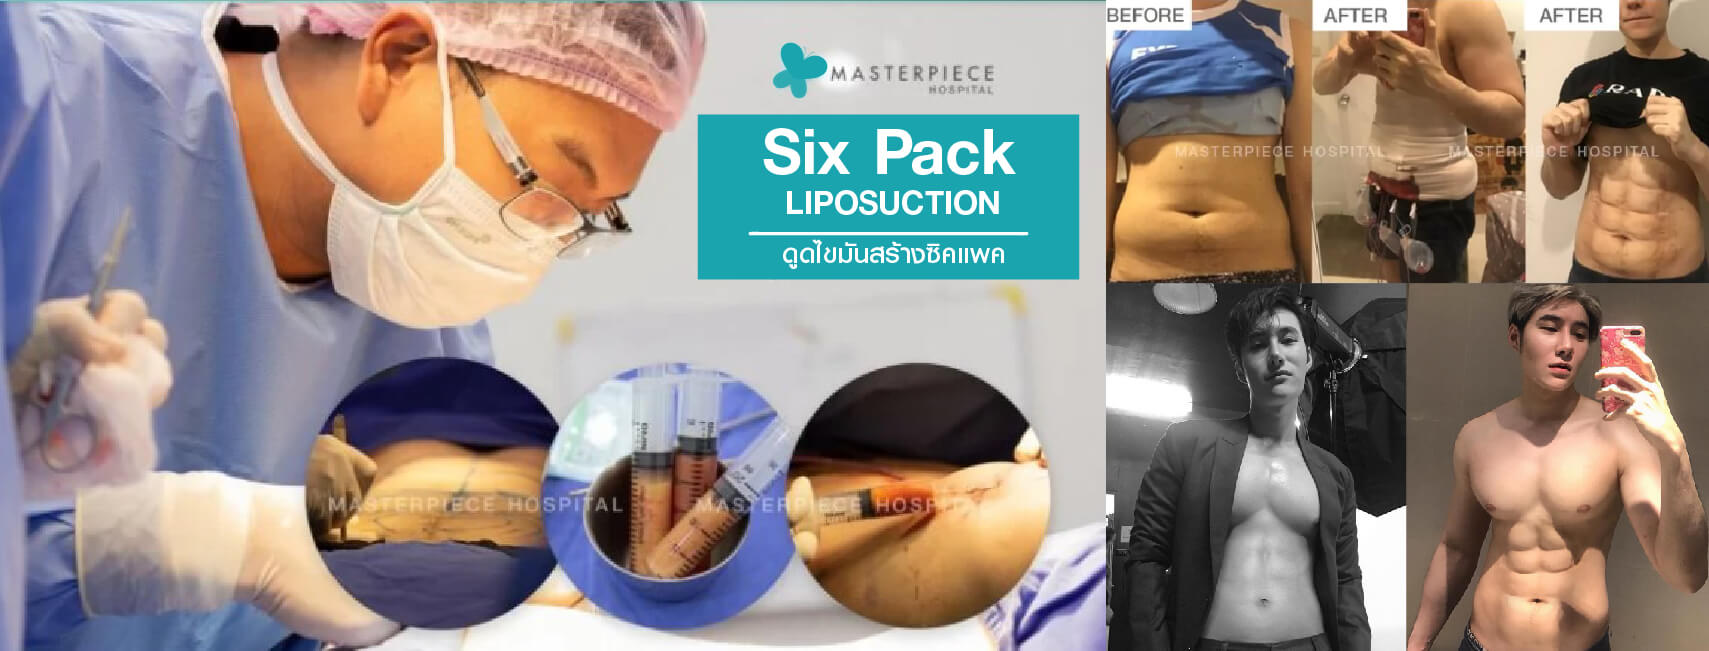 six pack liposuction